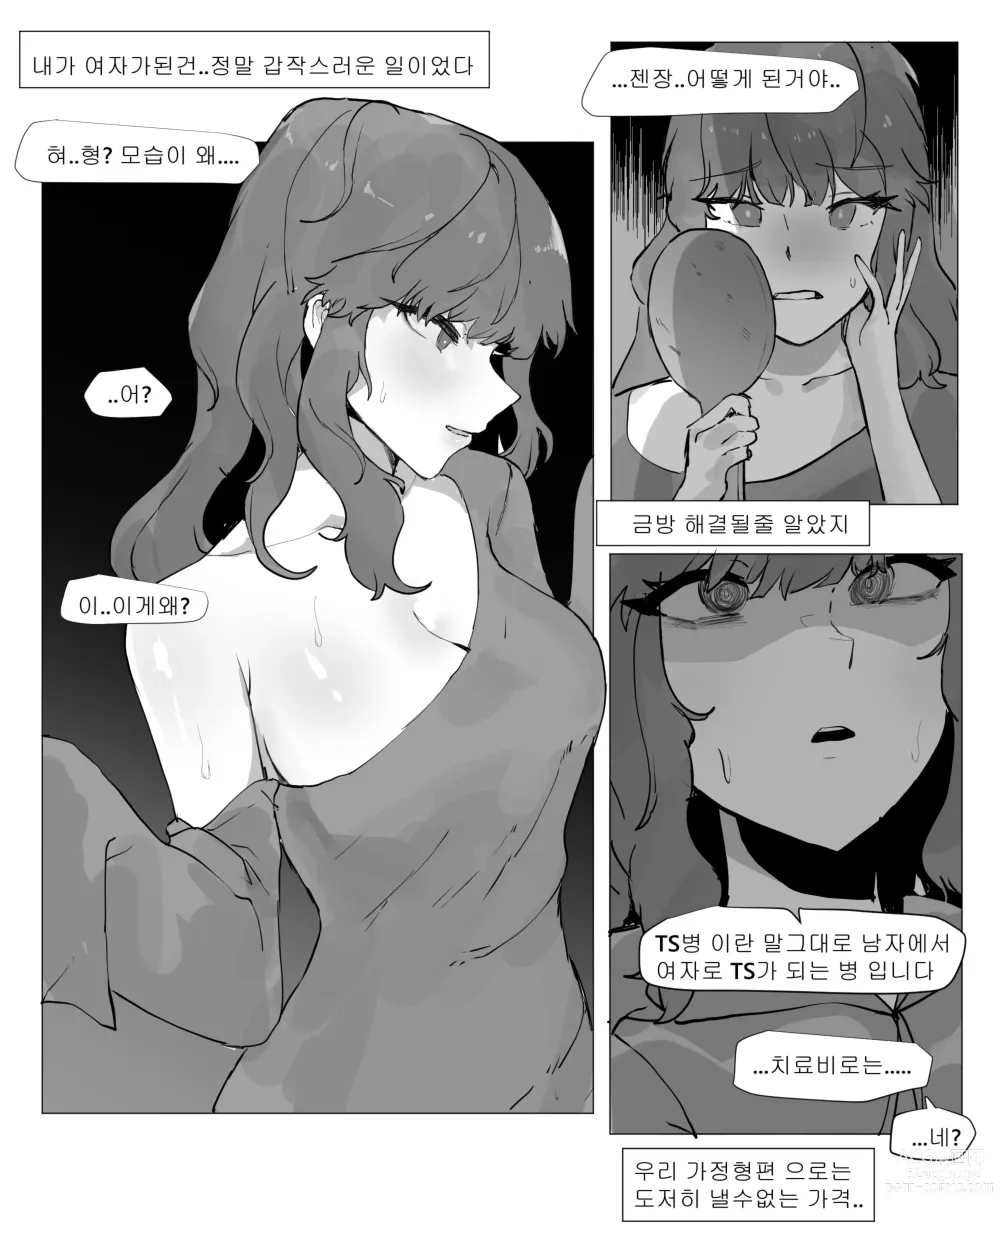 Page 6 of doujinshi 어느날 나는 TS 되었다 -1